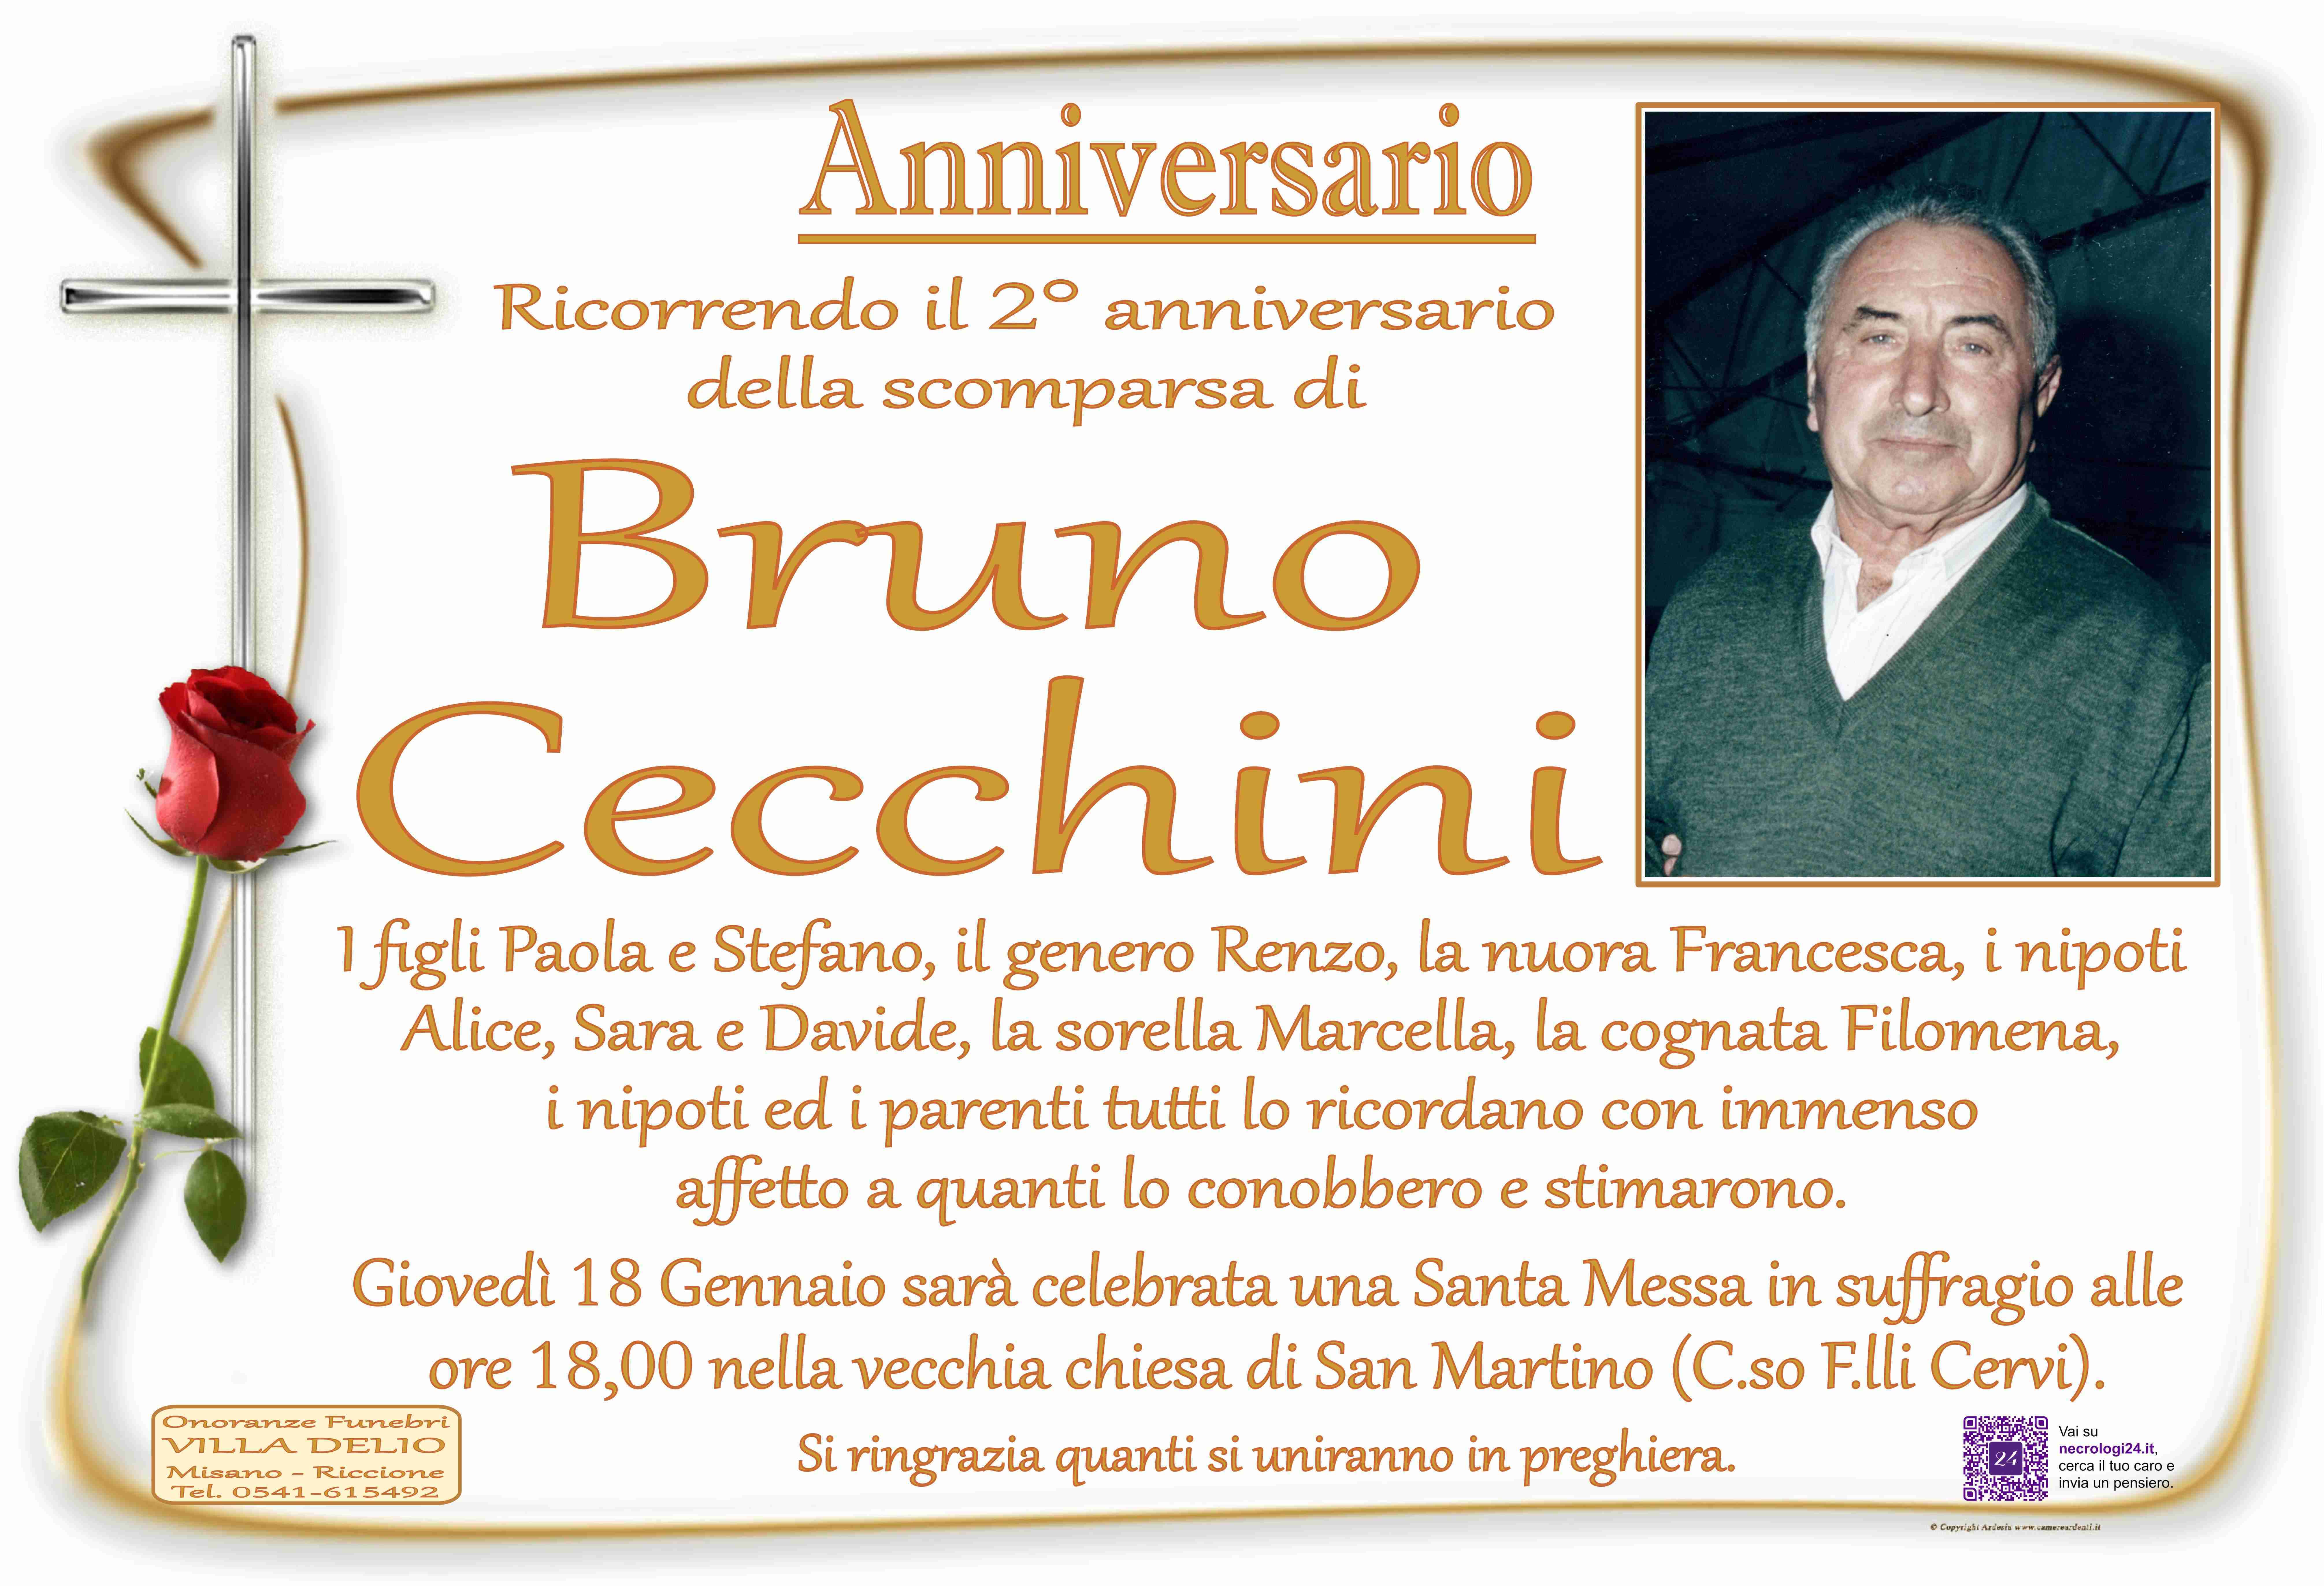 Bruno Cecchini